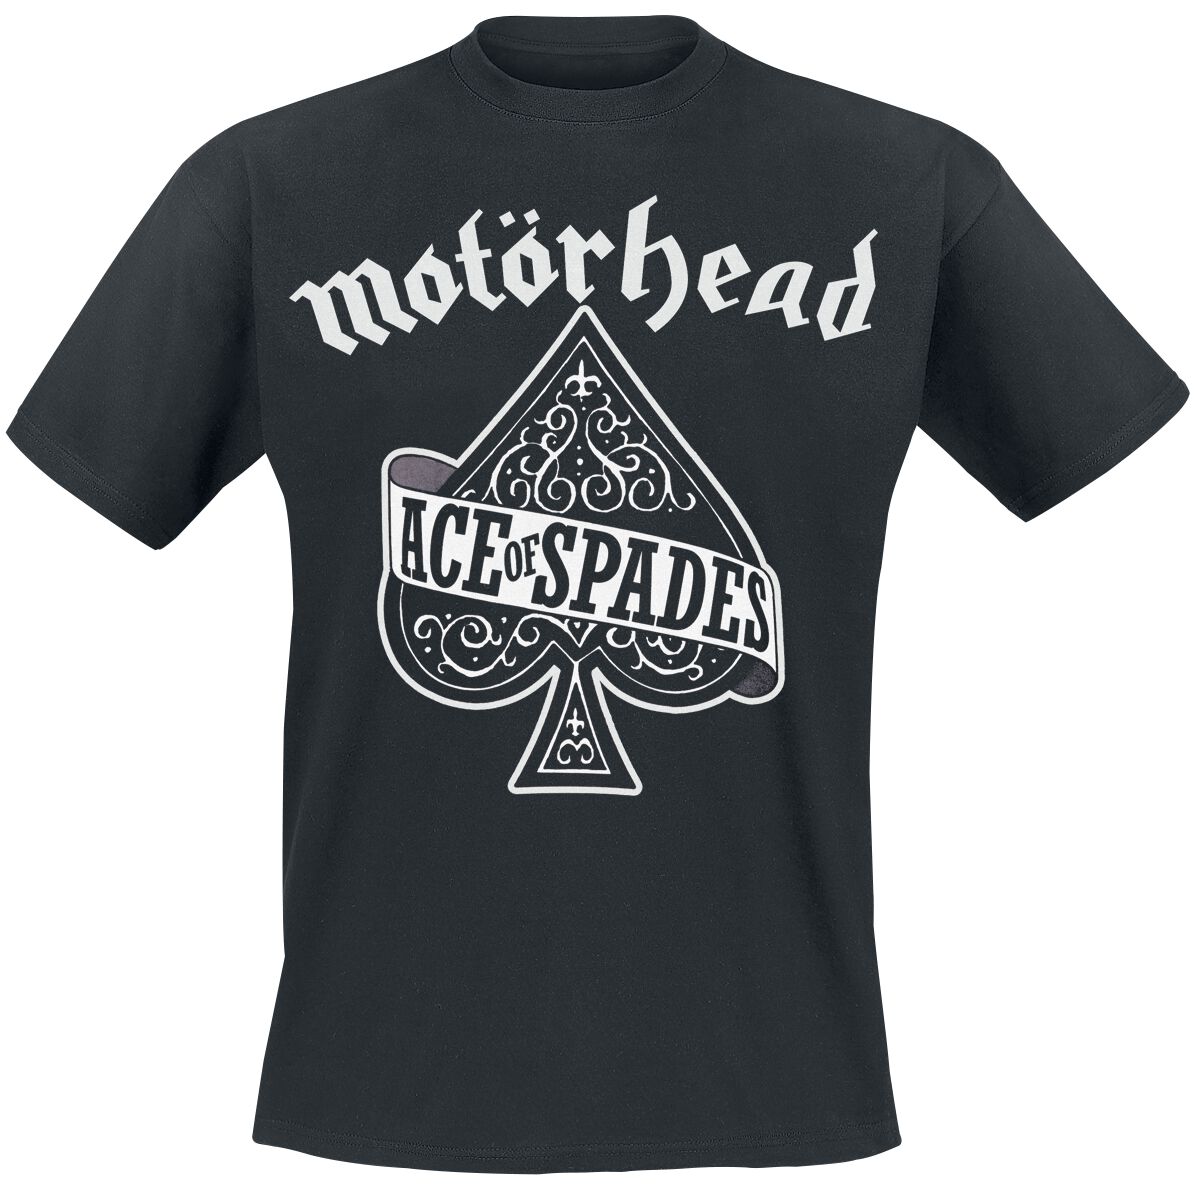 Motörhead T-Shirt - Ace Of Spades - XS bis M - für Männer - Größe M - schwarz  - Lizenziertes Merchandise!